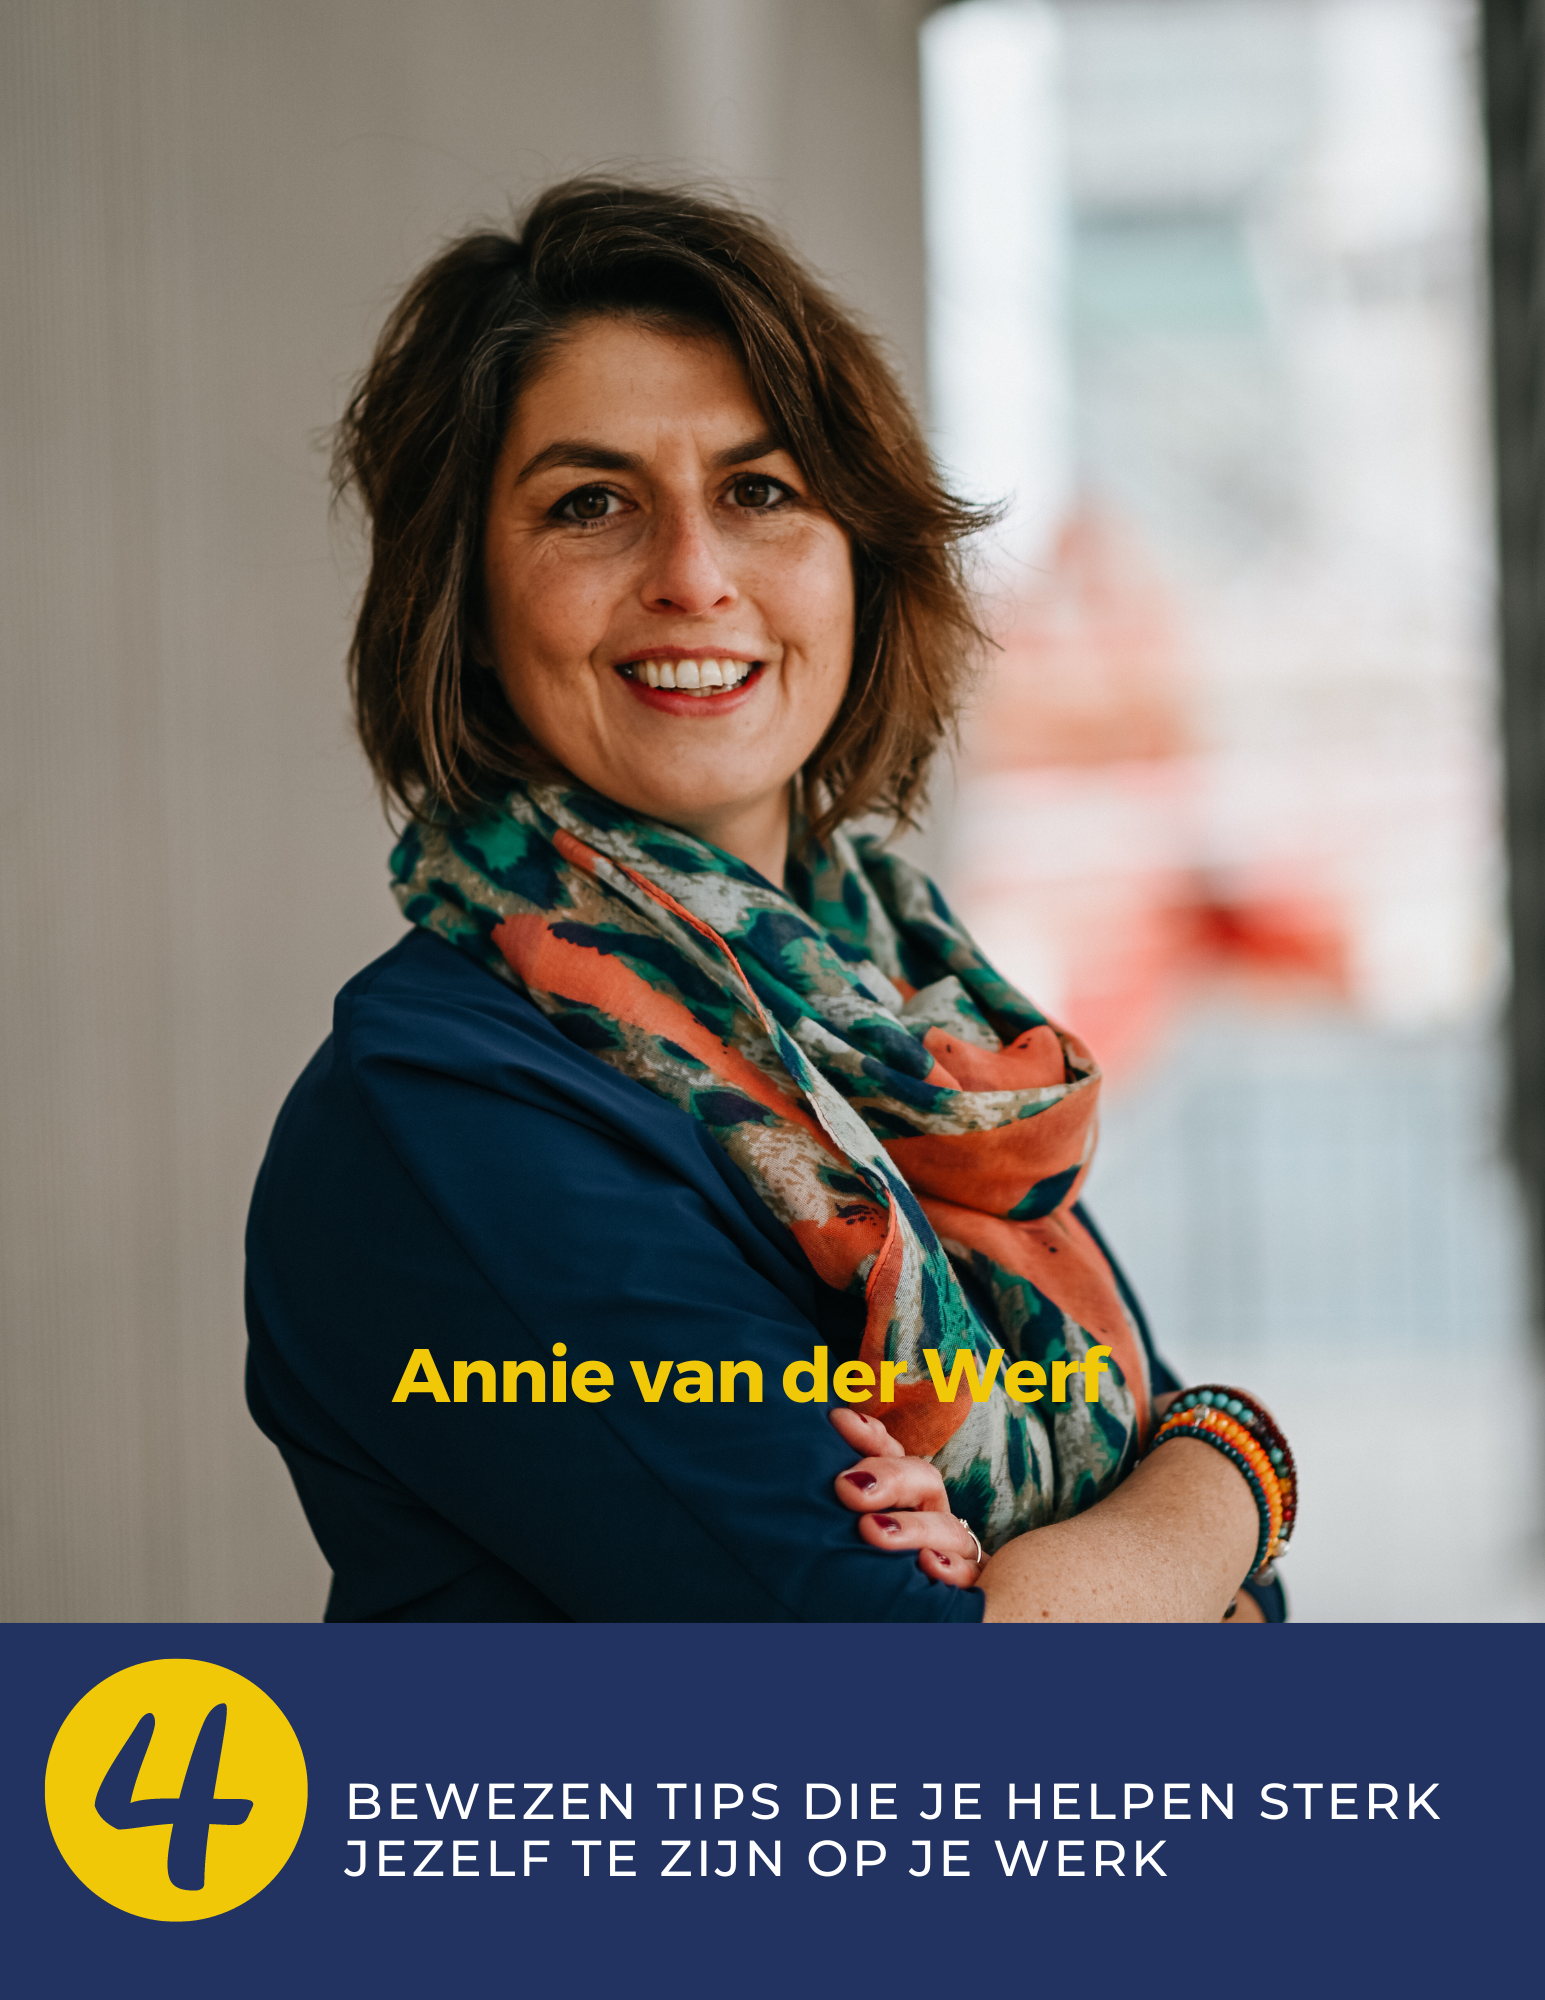 Annie van der Werf